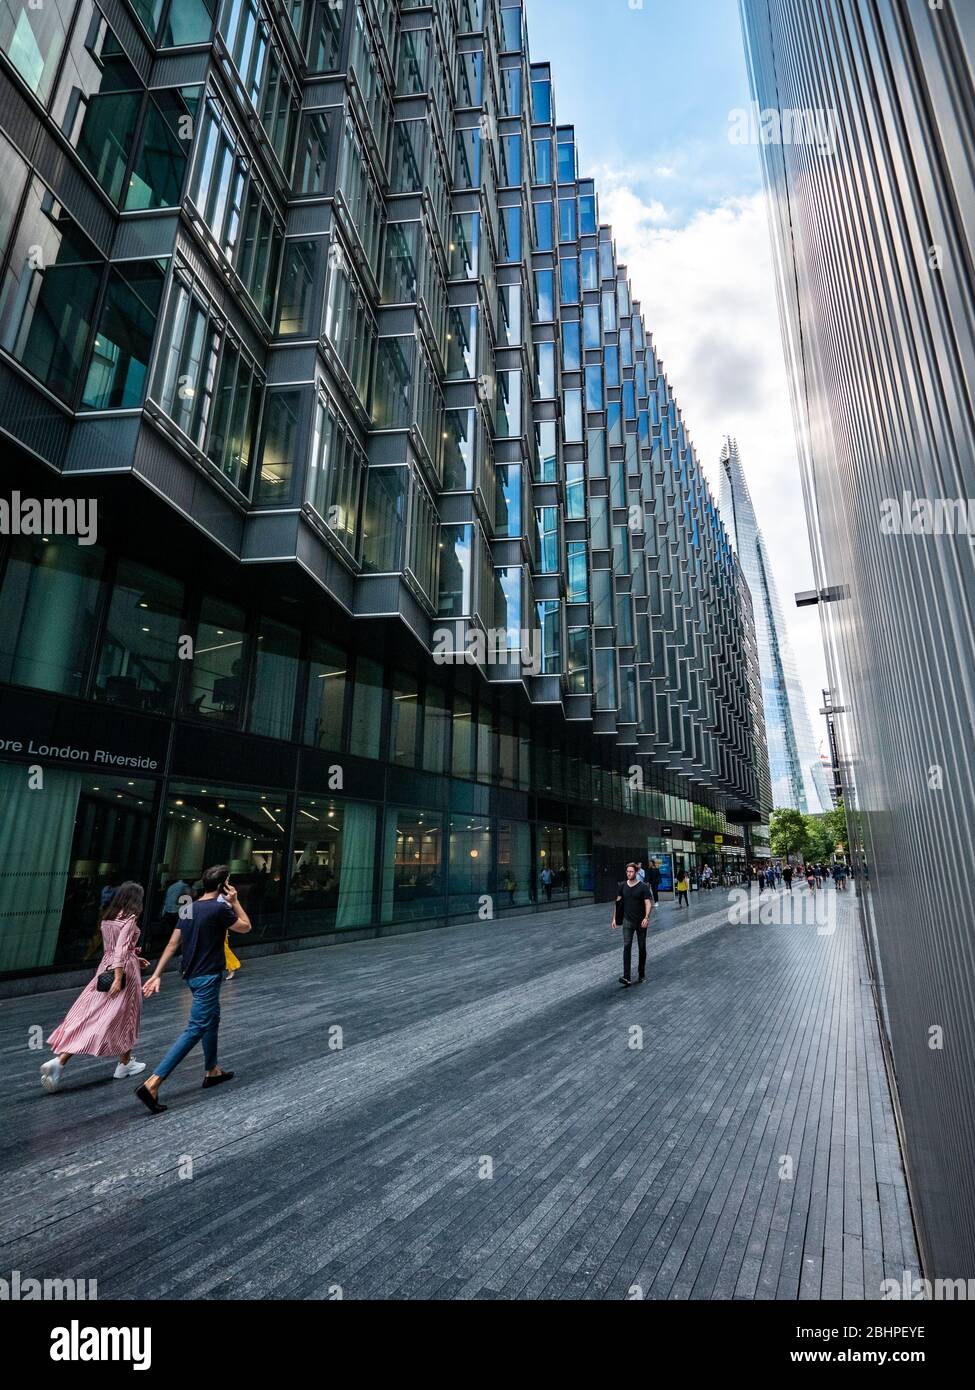 Mehr London Riverside. Die neue Fußgängerzone für Geschäfts- und Einzelhandelsviertel Mehr London Riverside mit dem ikonischen Shard-Gebäude, das die Ferne dominiert Stockfoto